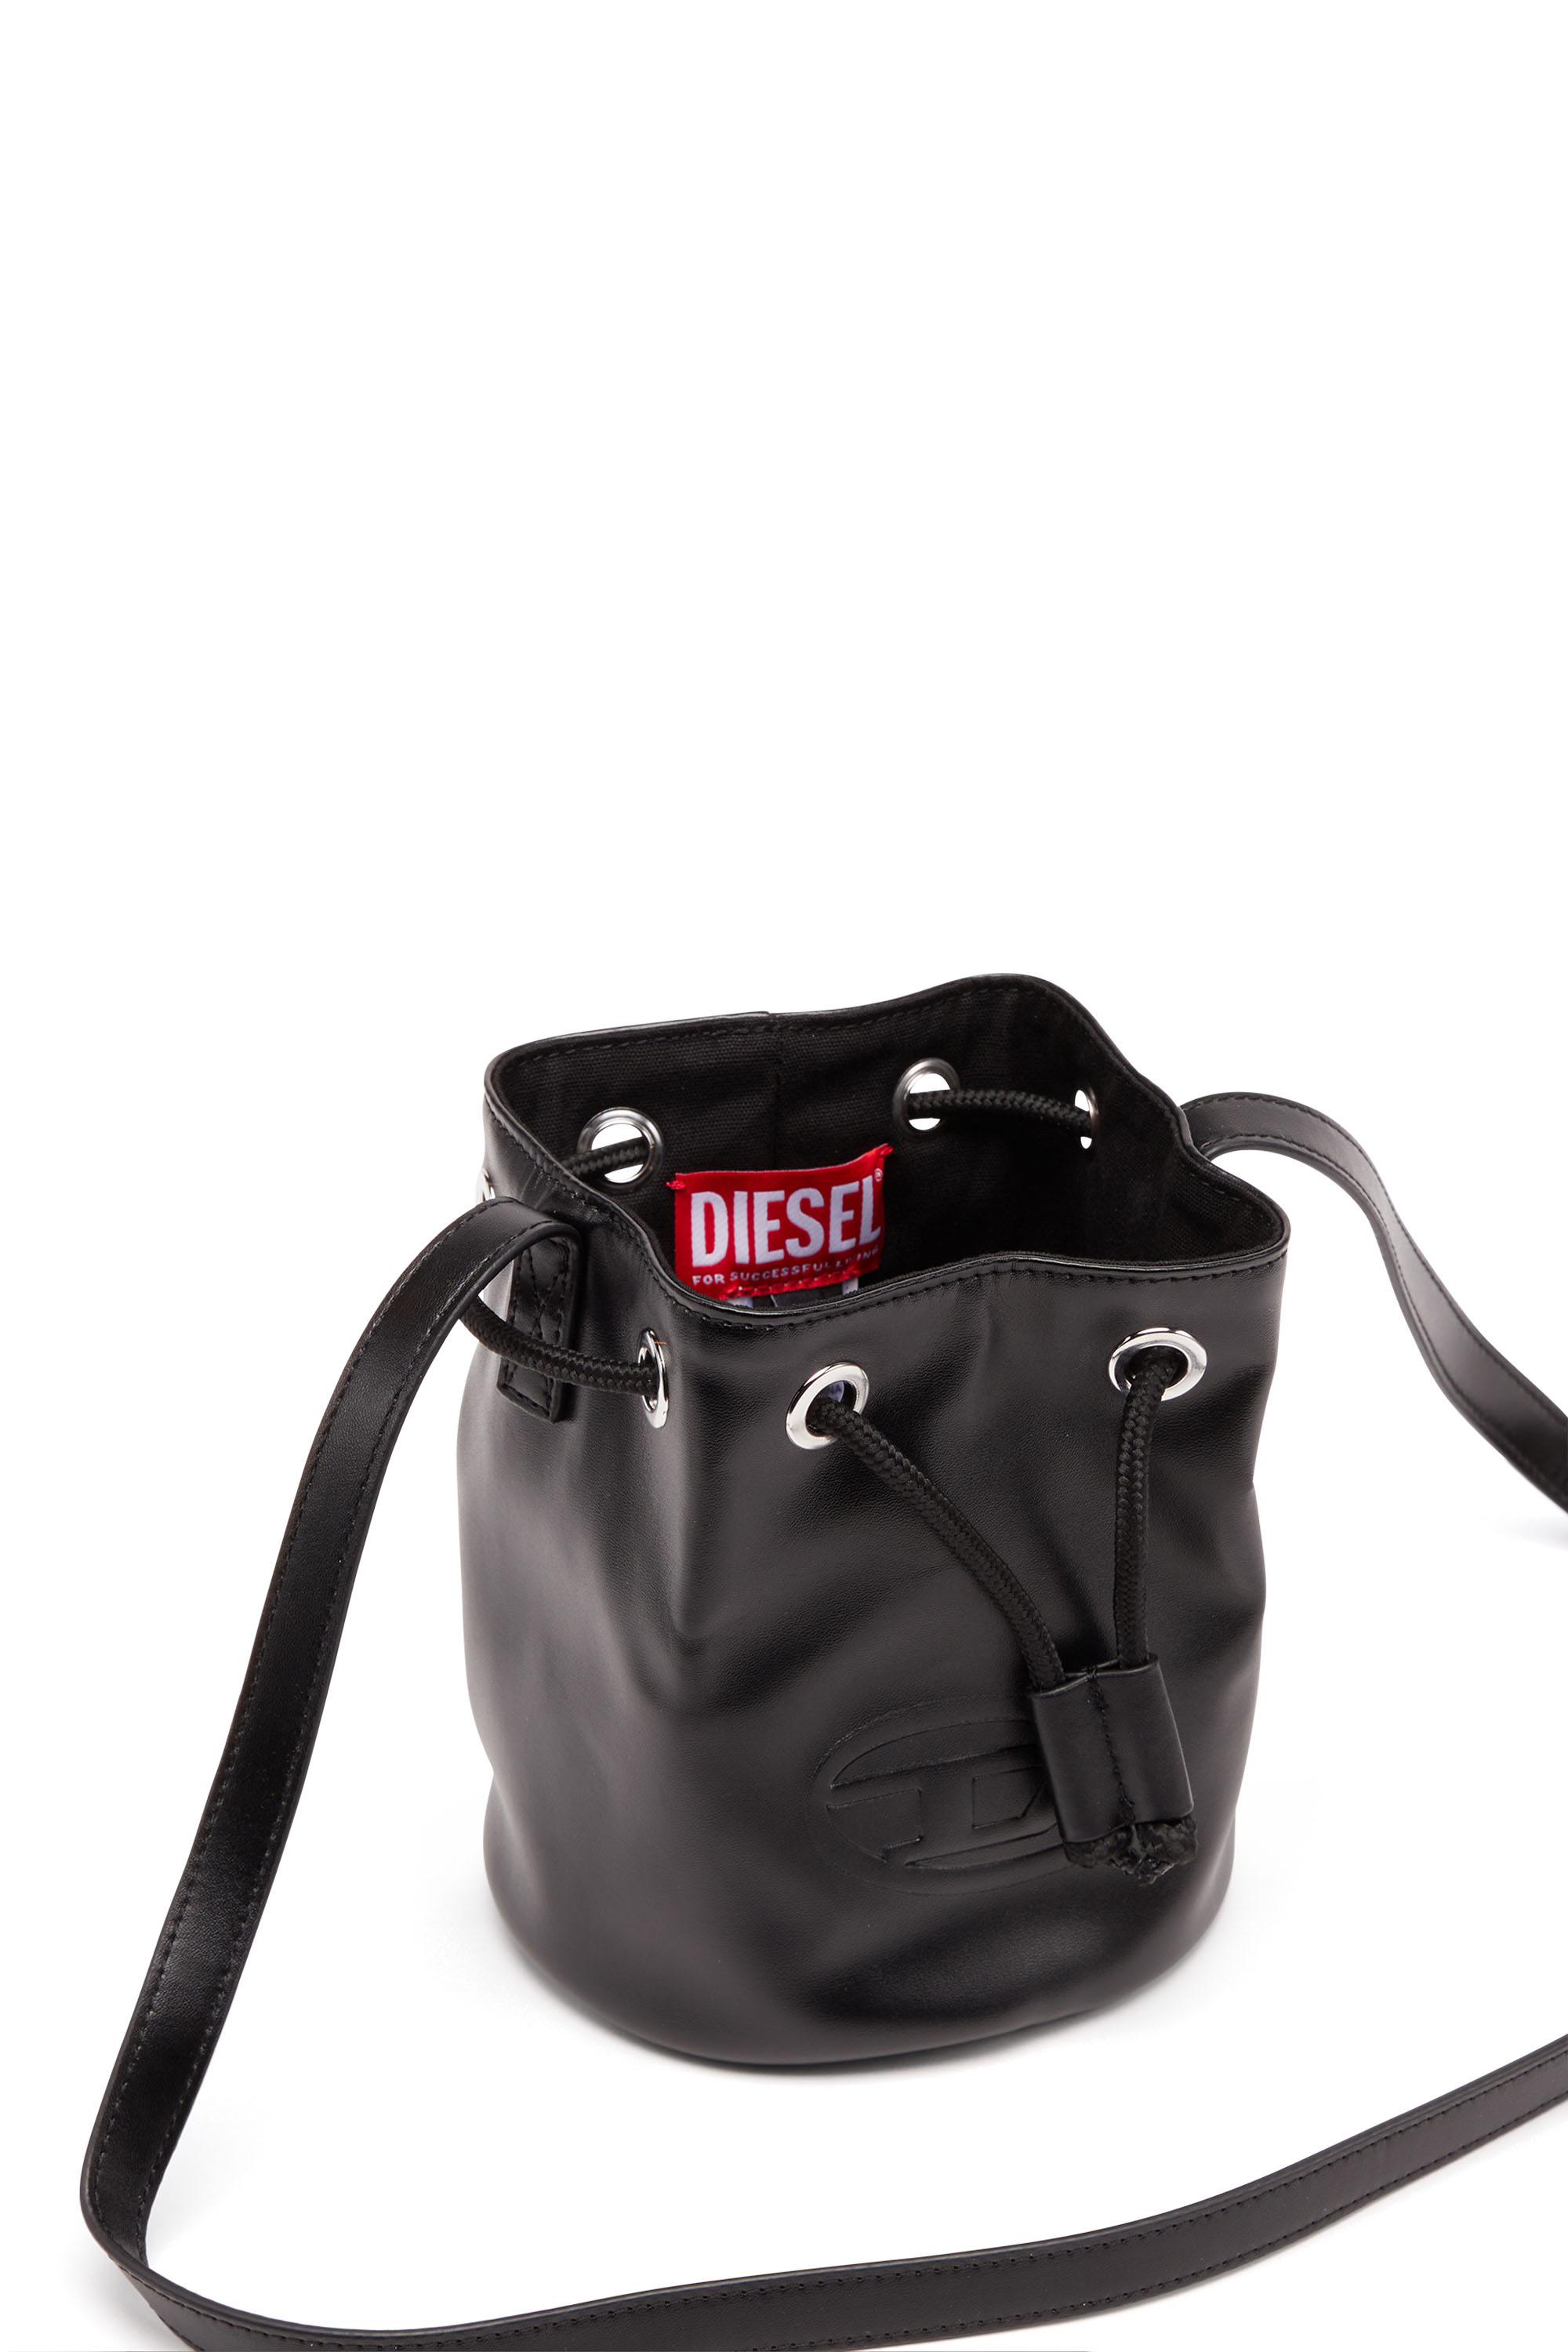 Diesel - WELLTY, ブラック - Image 4